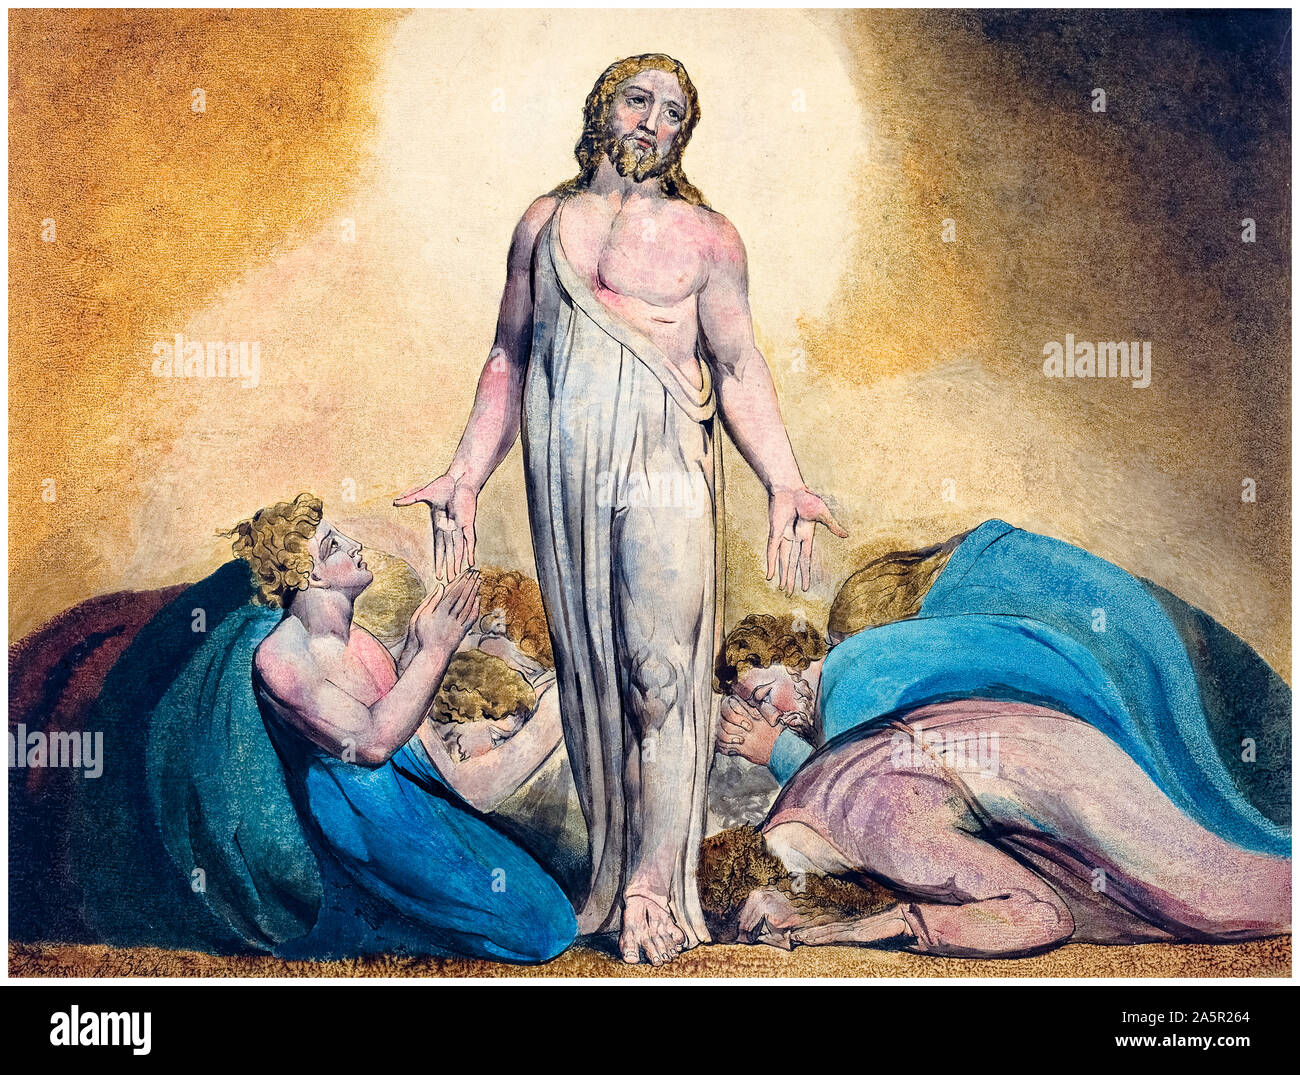 William Blake, Christ apparaissant à ses disciples après la Résurrection, peinture aquarelle sur plume et encre, vers 1795 Banque D'Images